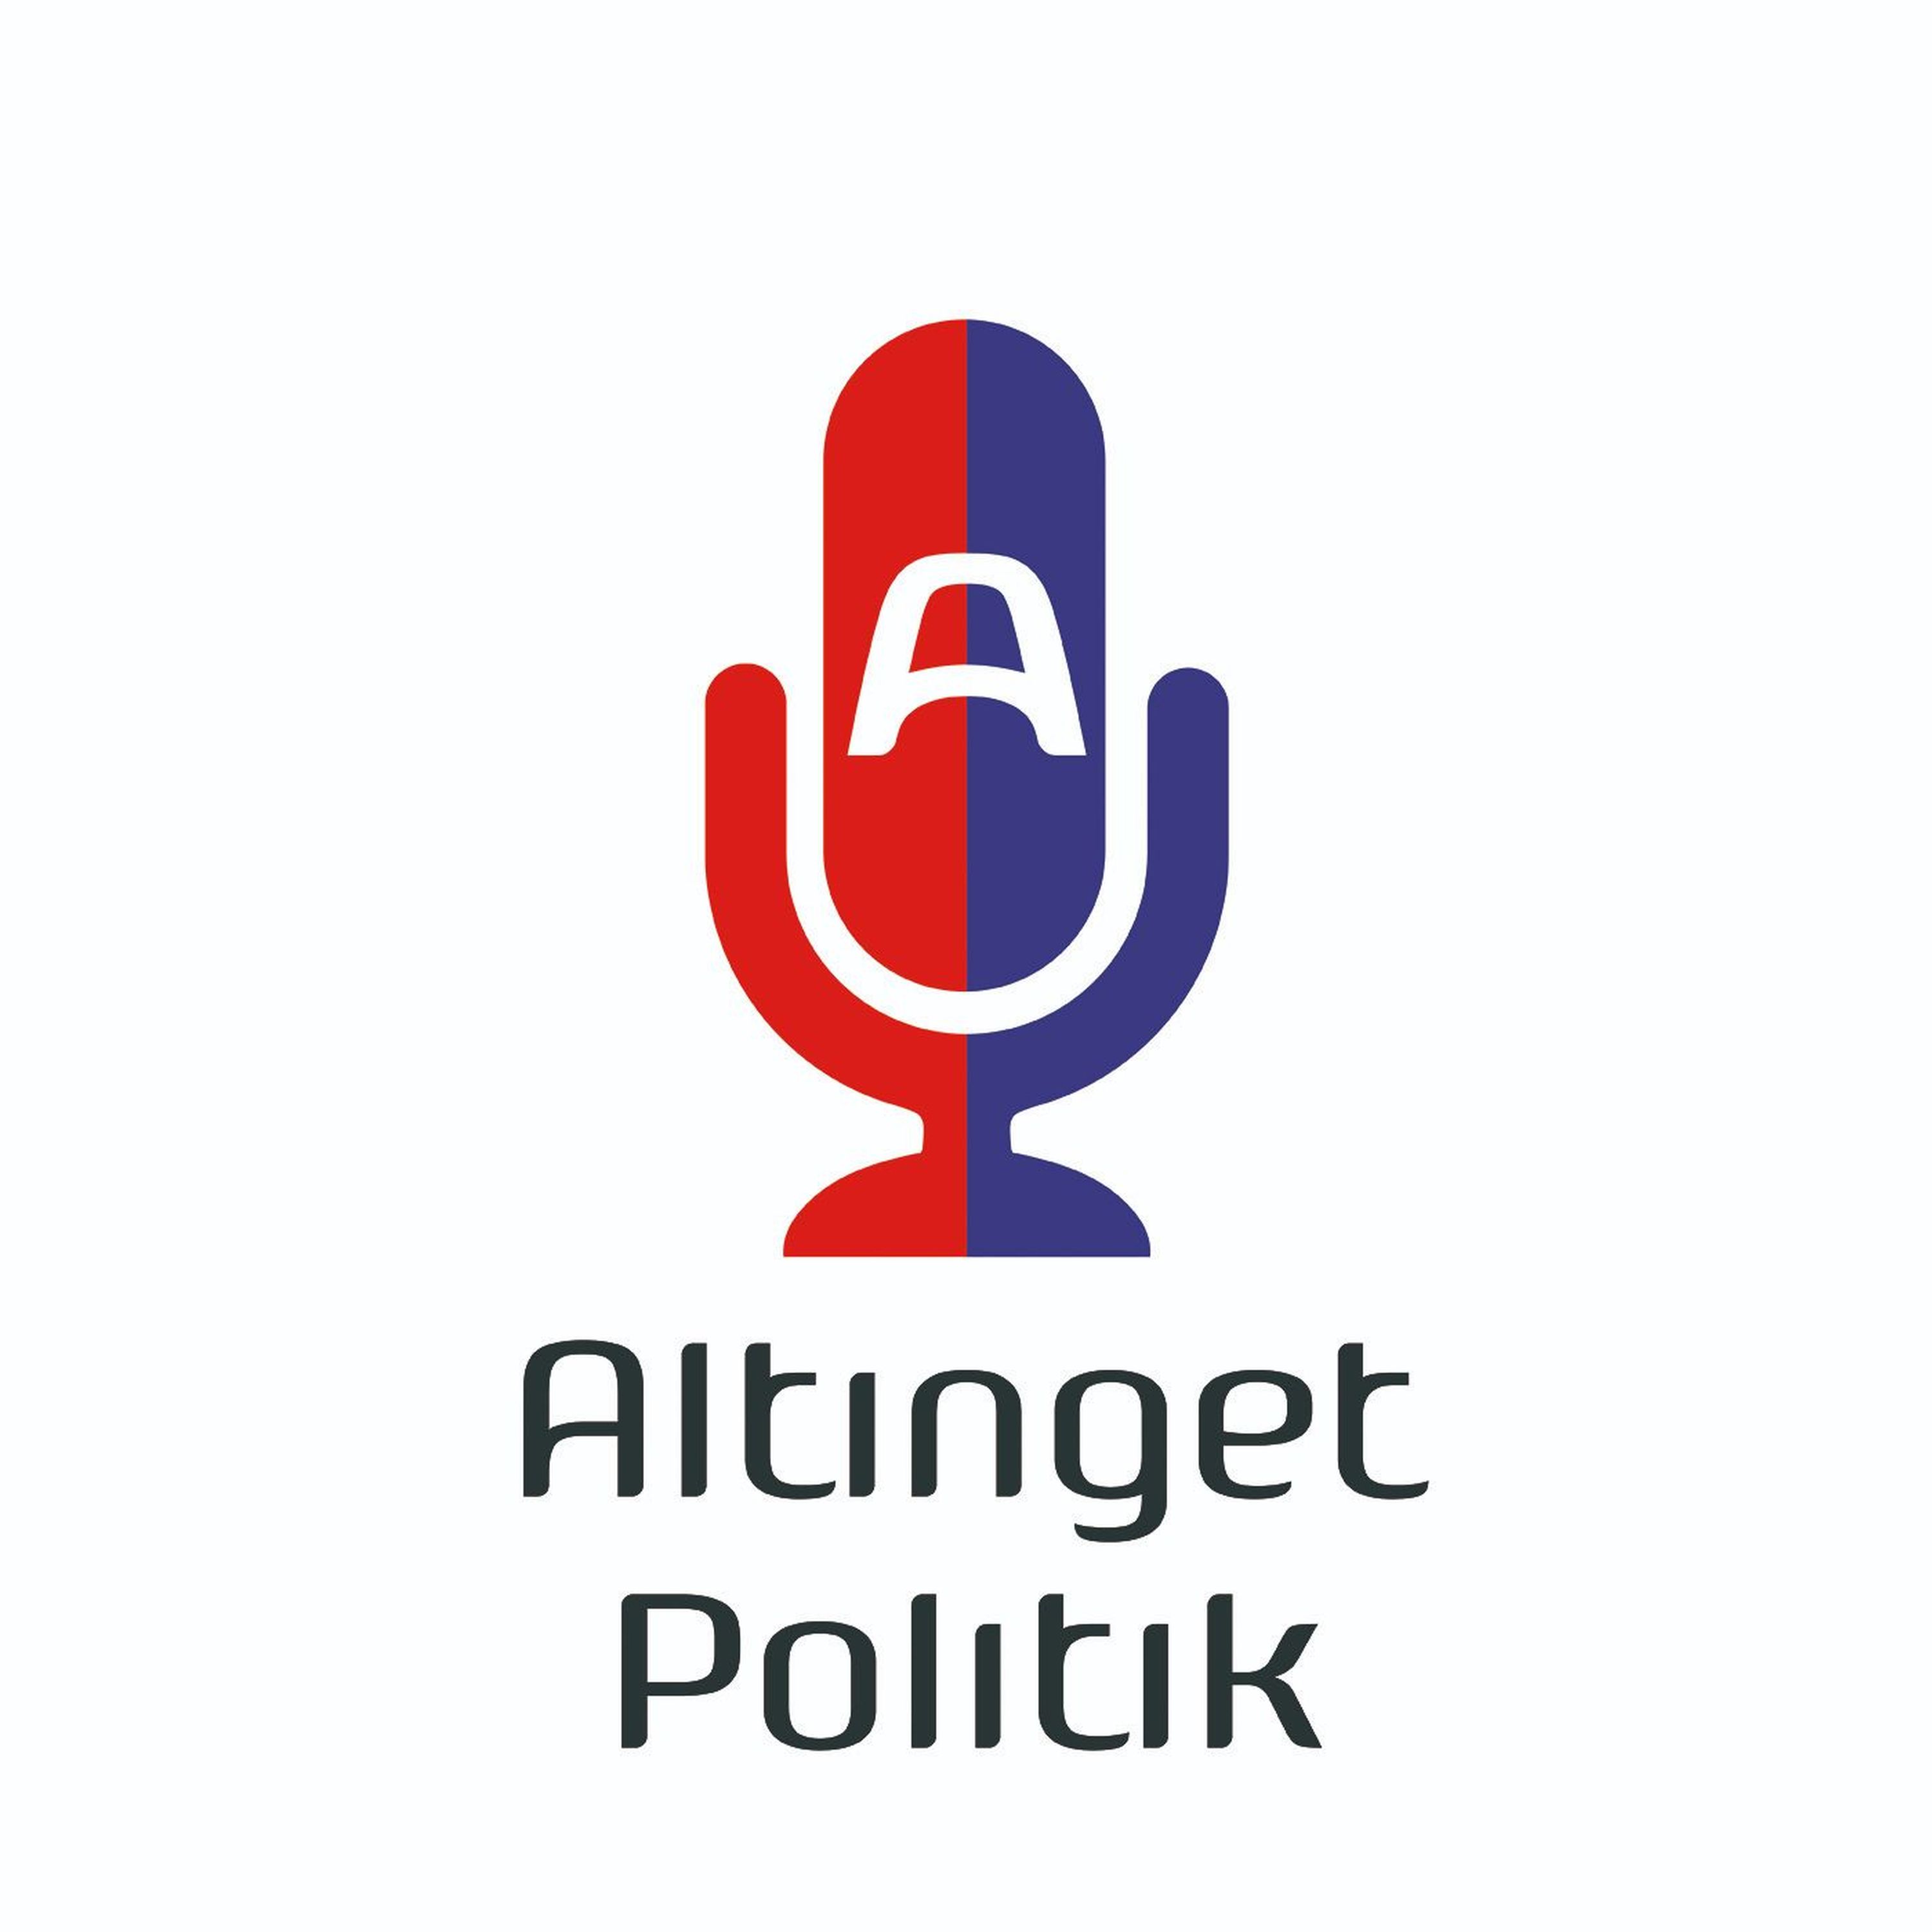 Feriepodcast: Socialisme i Danmark (genudgivelse)